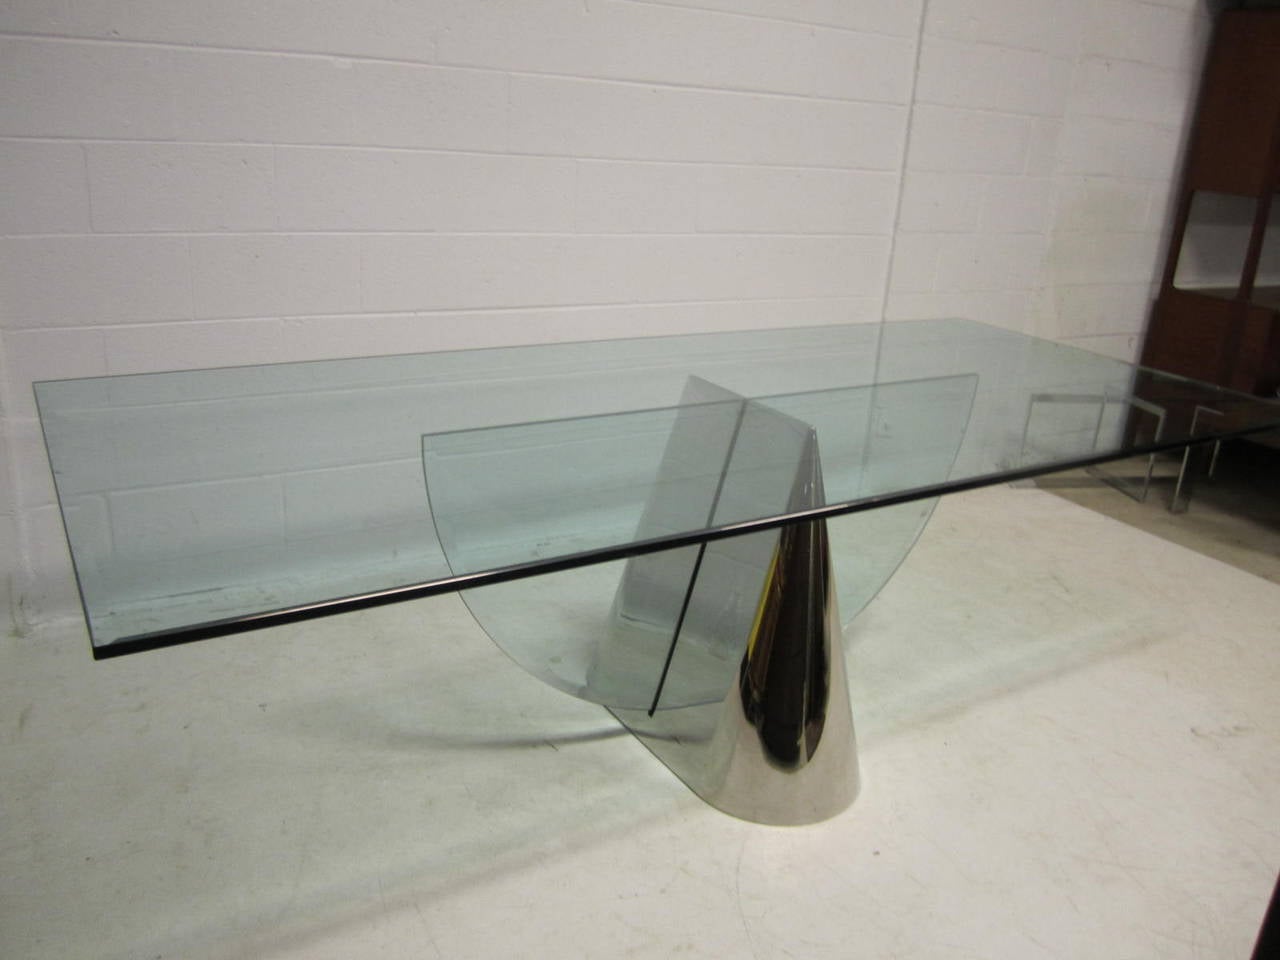 Lorsqu'il s'agit de design en verre chic et sophistiqué, cette table remporte la palme. Minimaliste, visuellement excitant et magnifiquement construit, c'est vraiment un design extraordinaire. Cette table Fine est en excellent état vintage. Acier